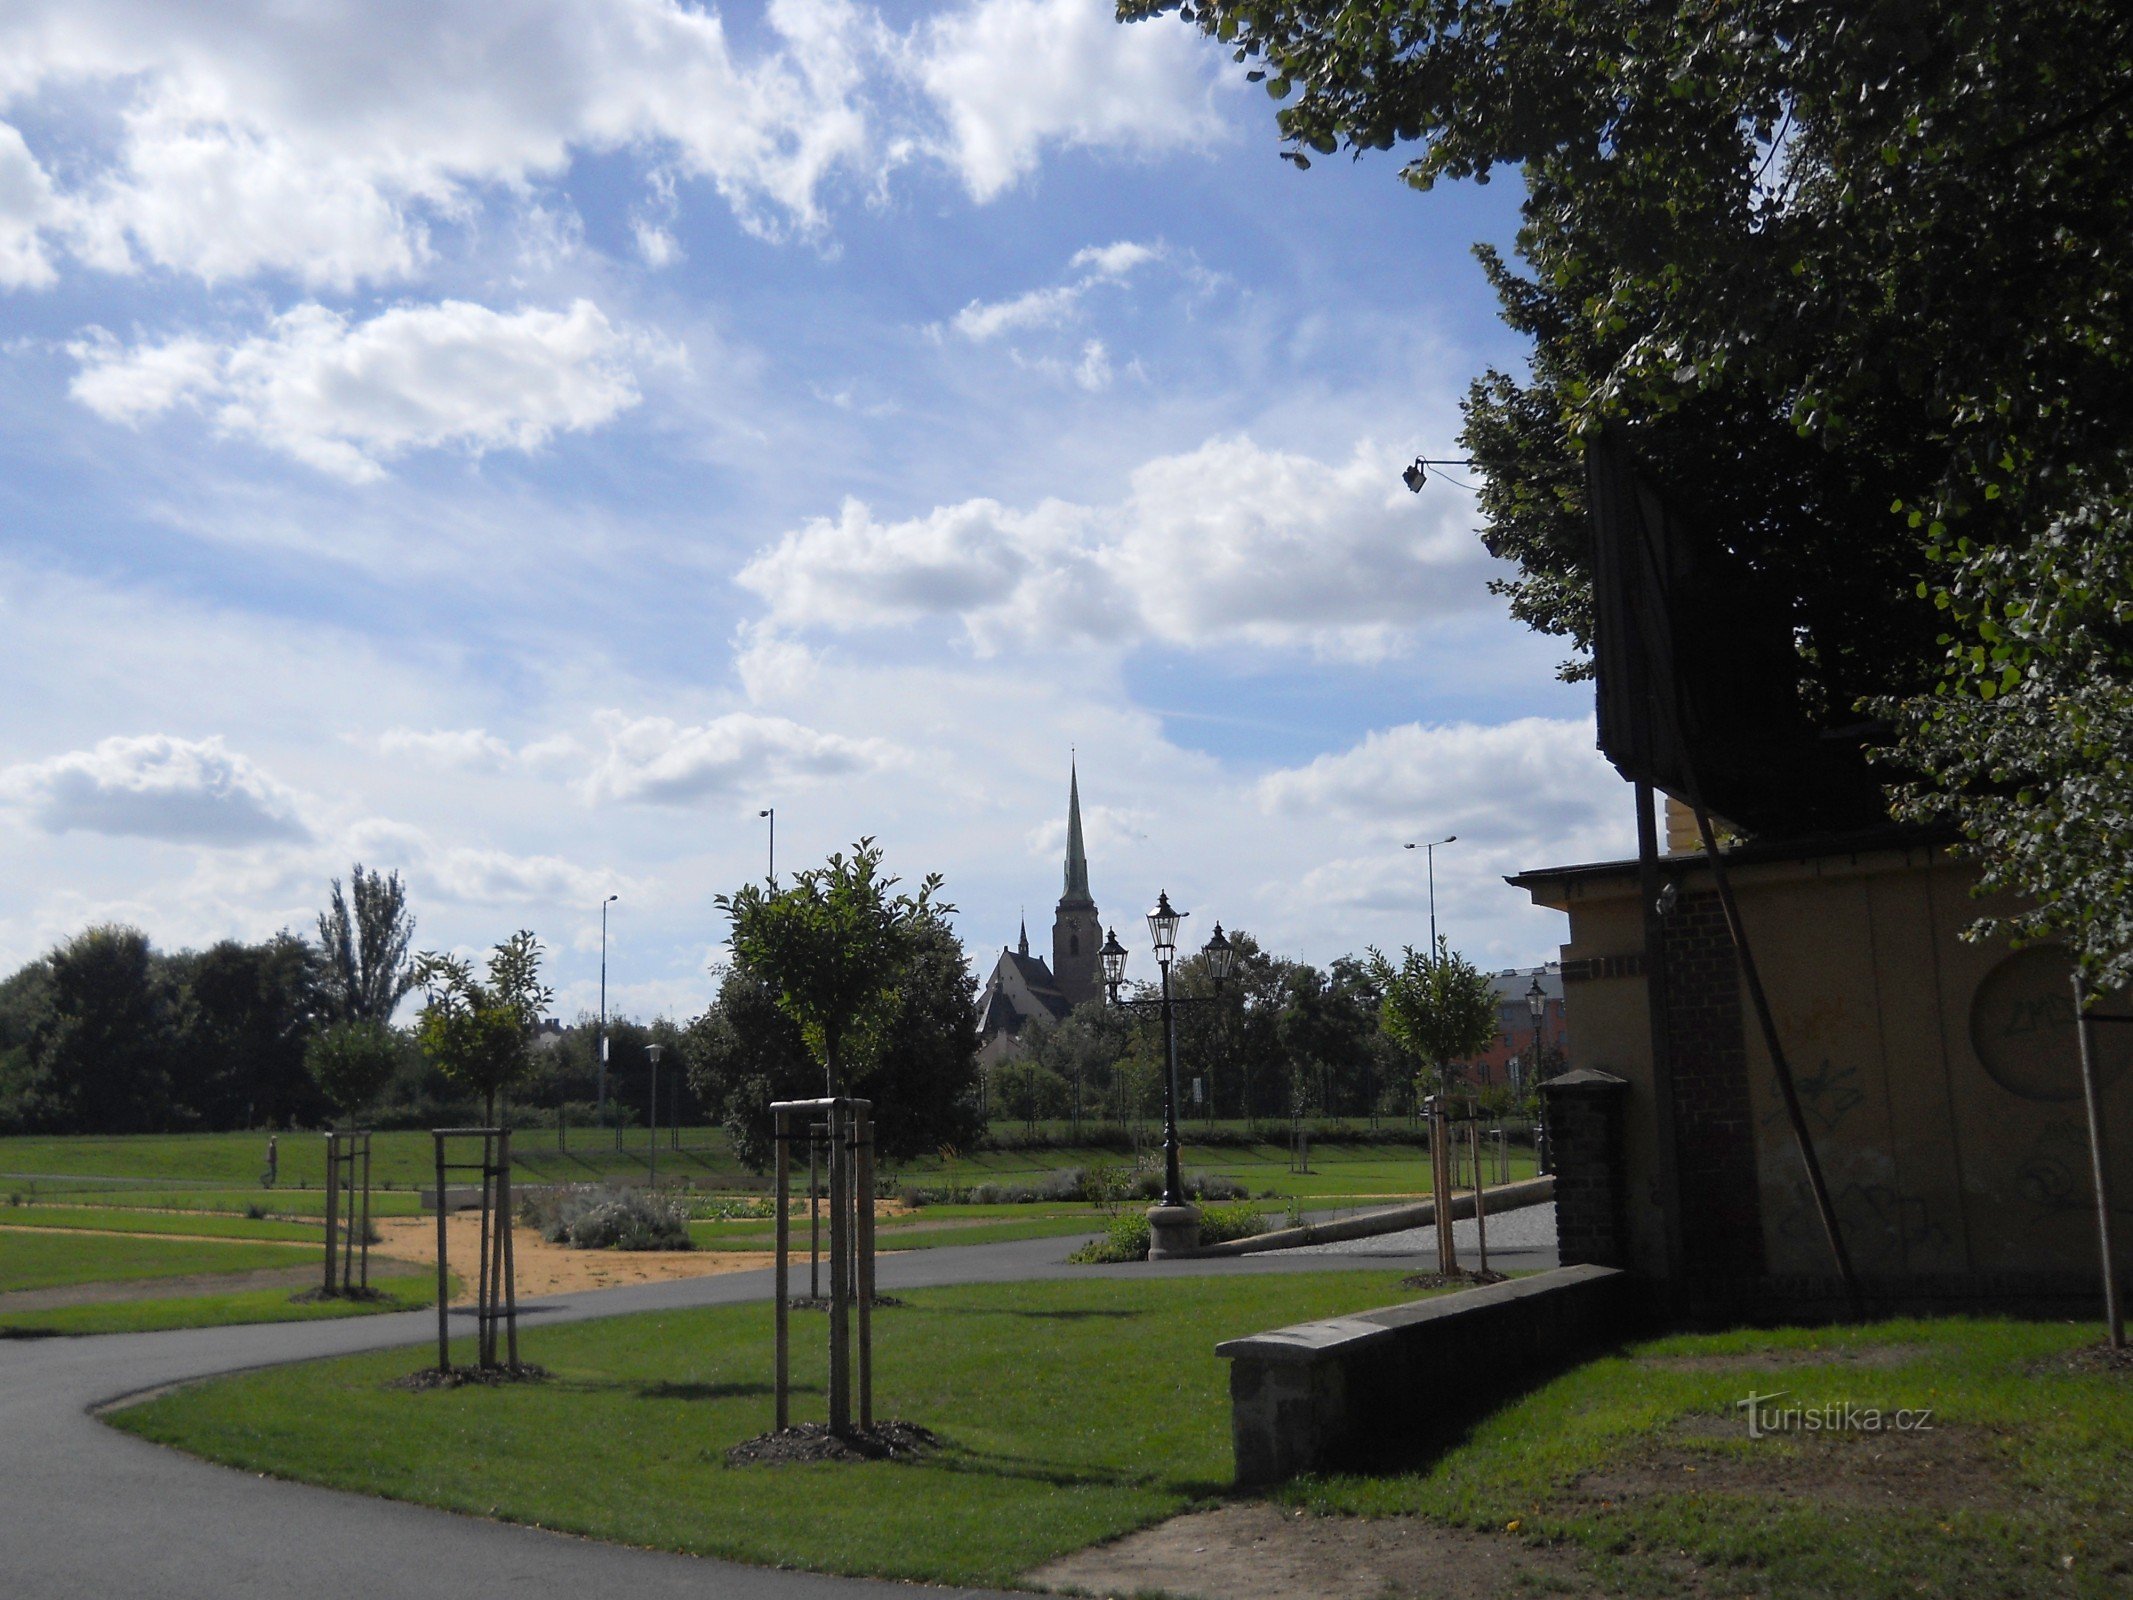 Вхід до парку з видом на Пльзеньський собор св. Варфоломій